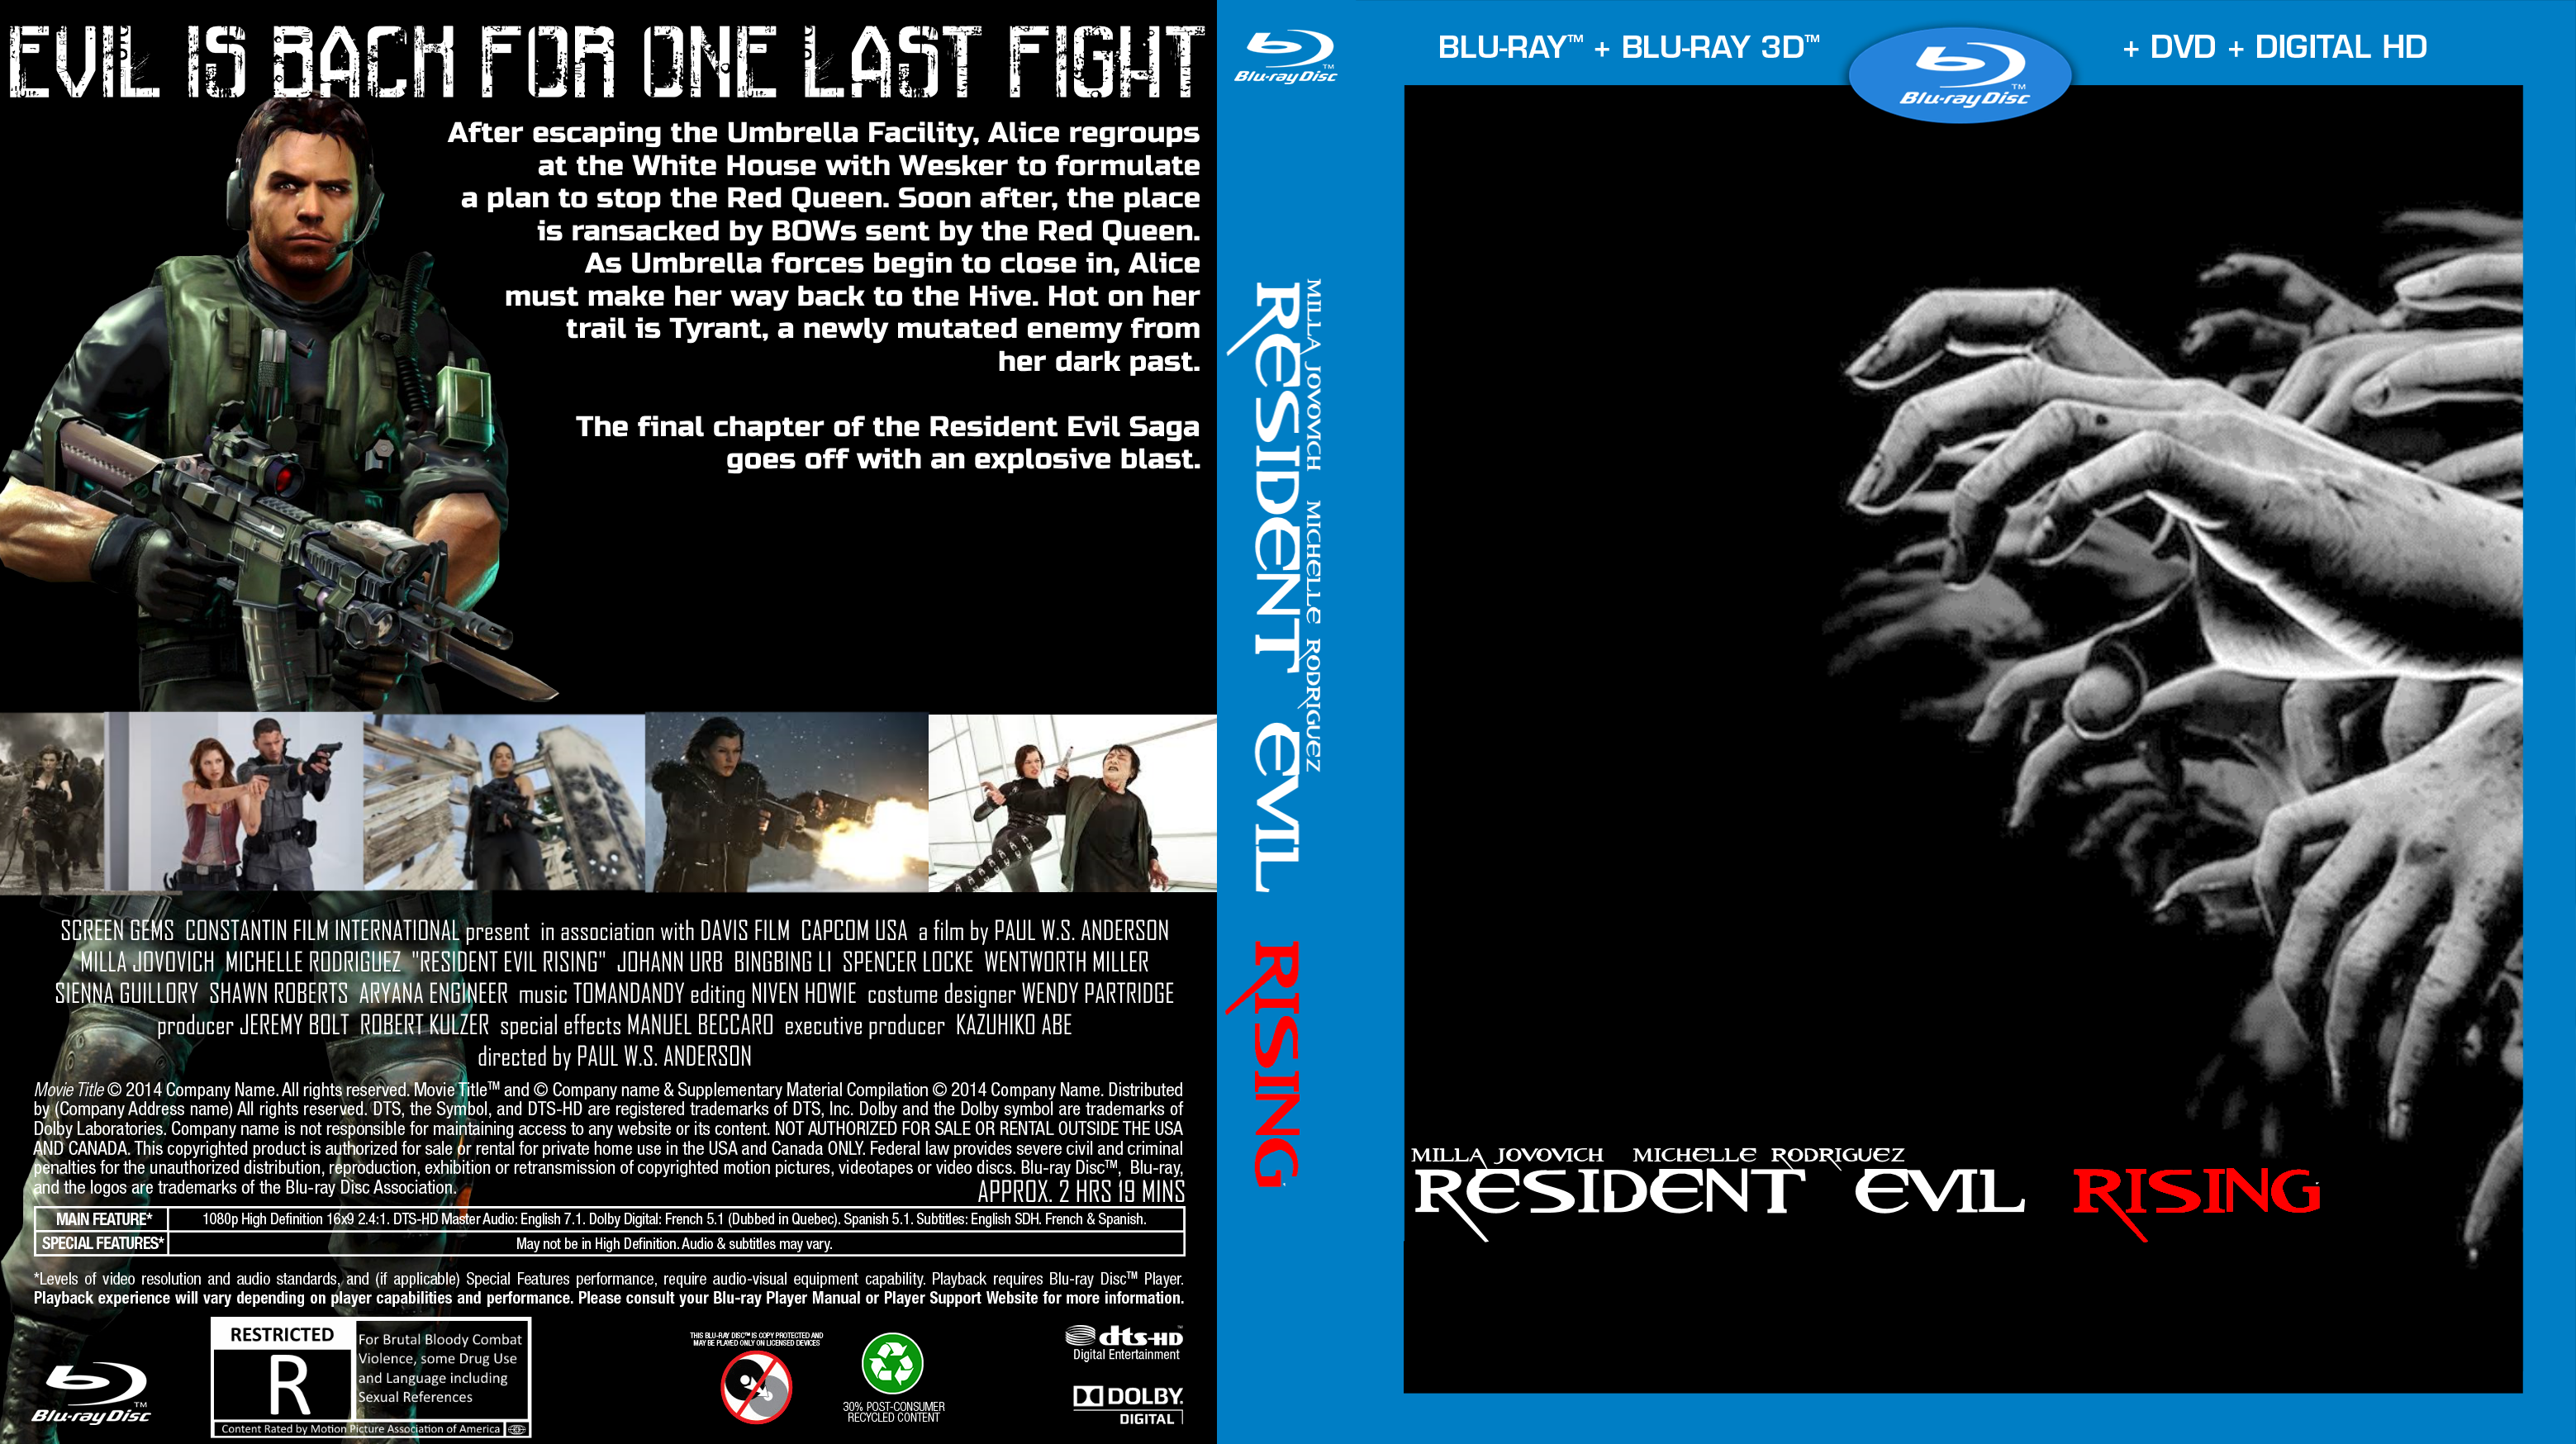 Resident Evil: Rising box cover